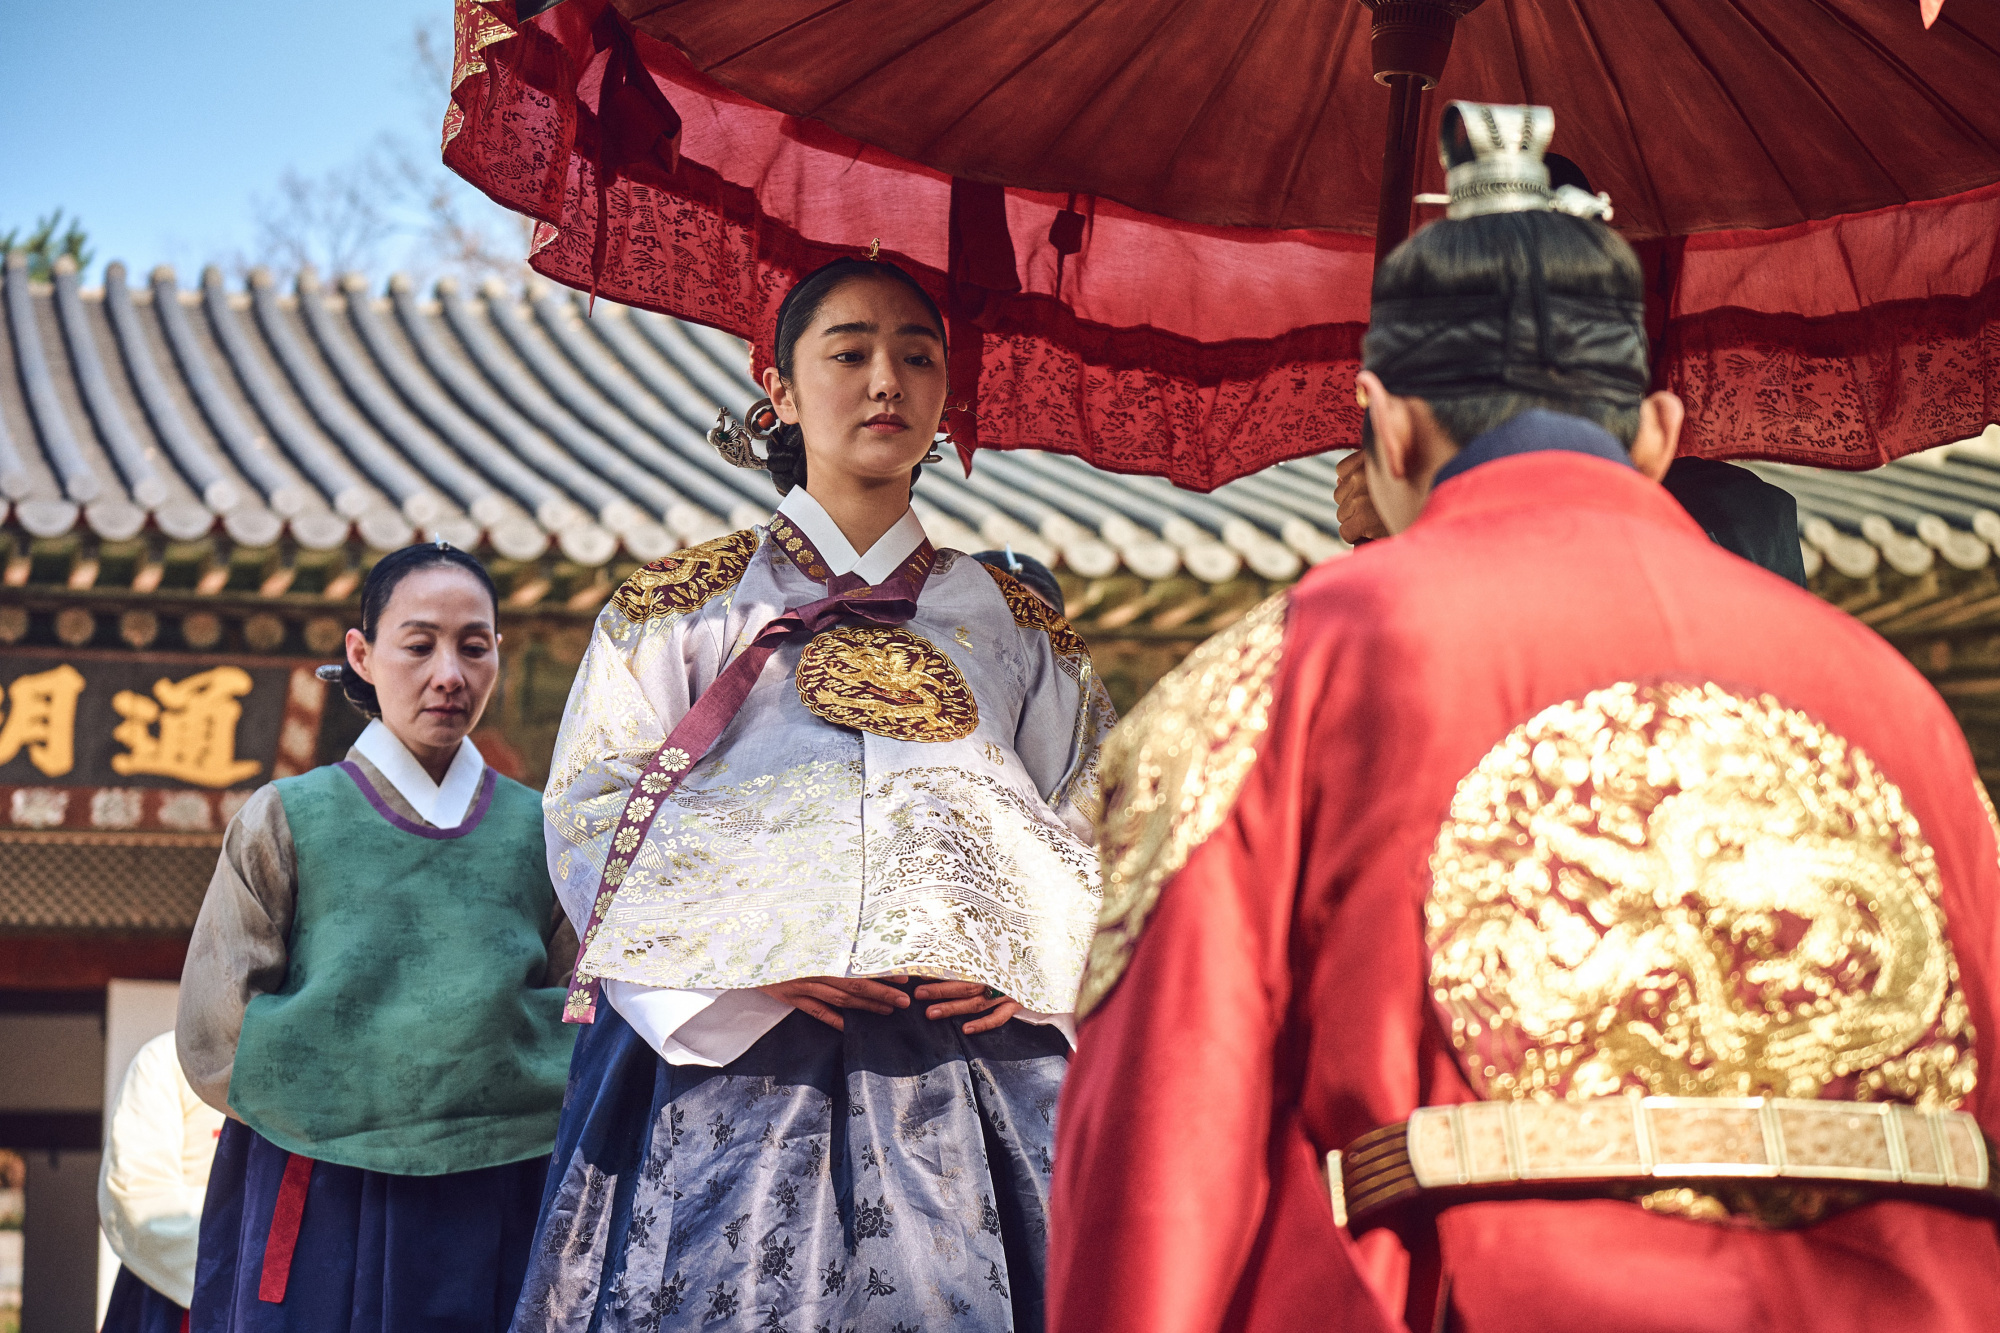 韩剧《王国》:奇幻,动作,宫斗集大成之作,值得我们学习